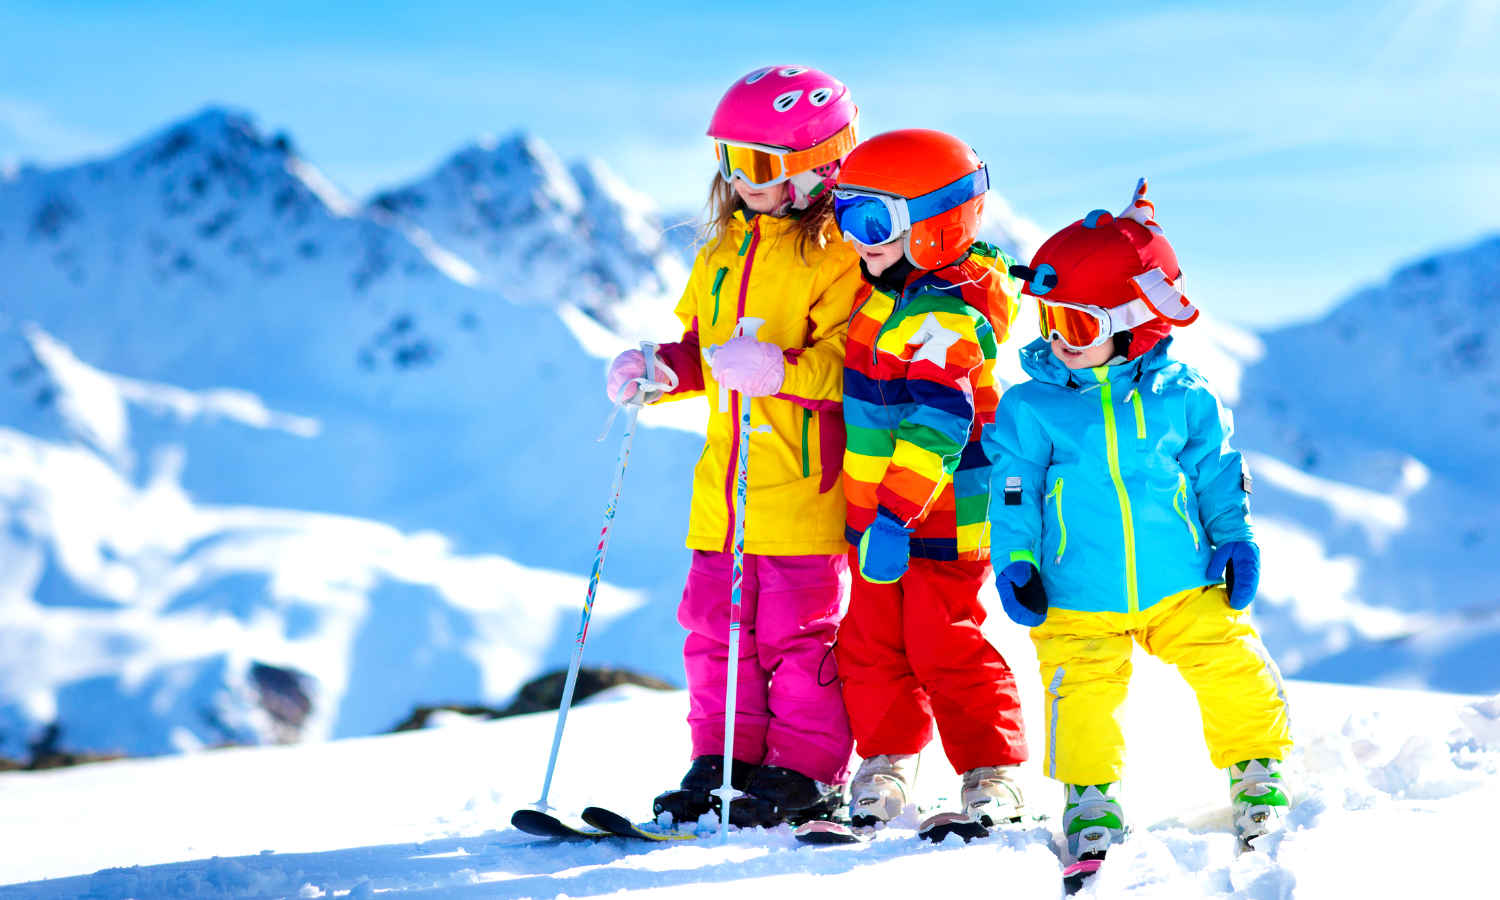 Image of children skiing.